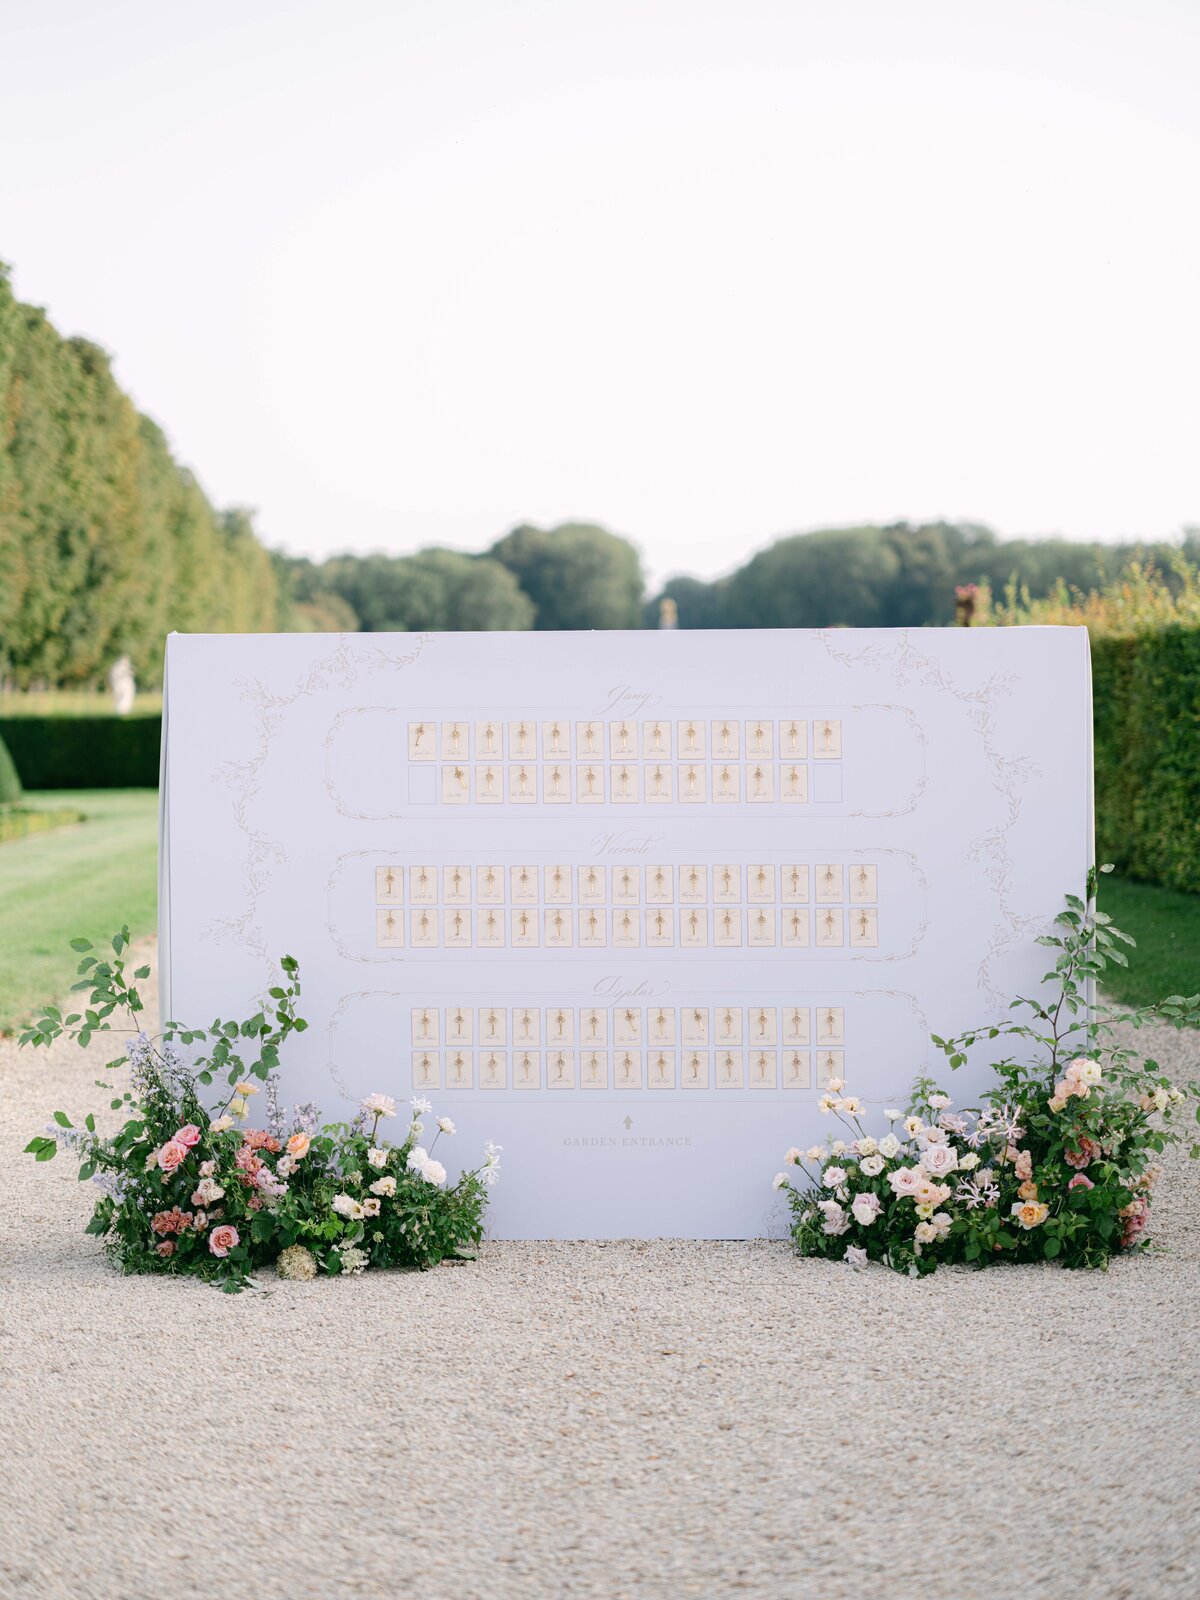 Chateau-Vaux-le-vicomte-wedding-florist-FLORAISON34